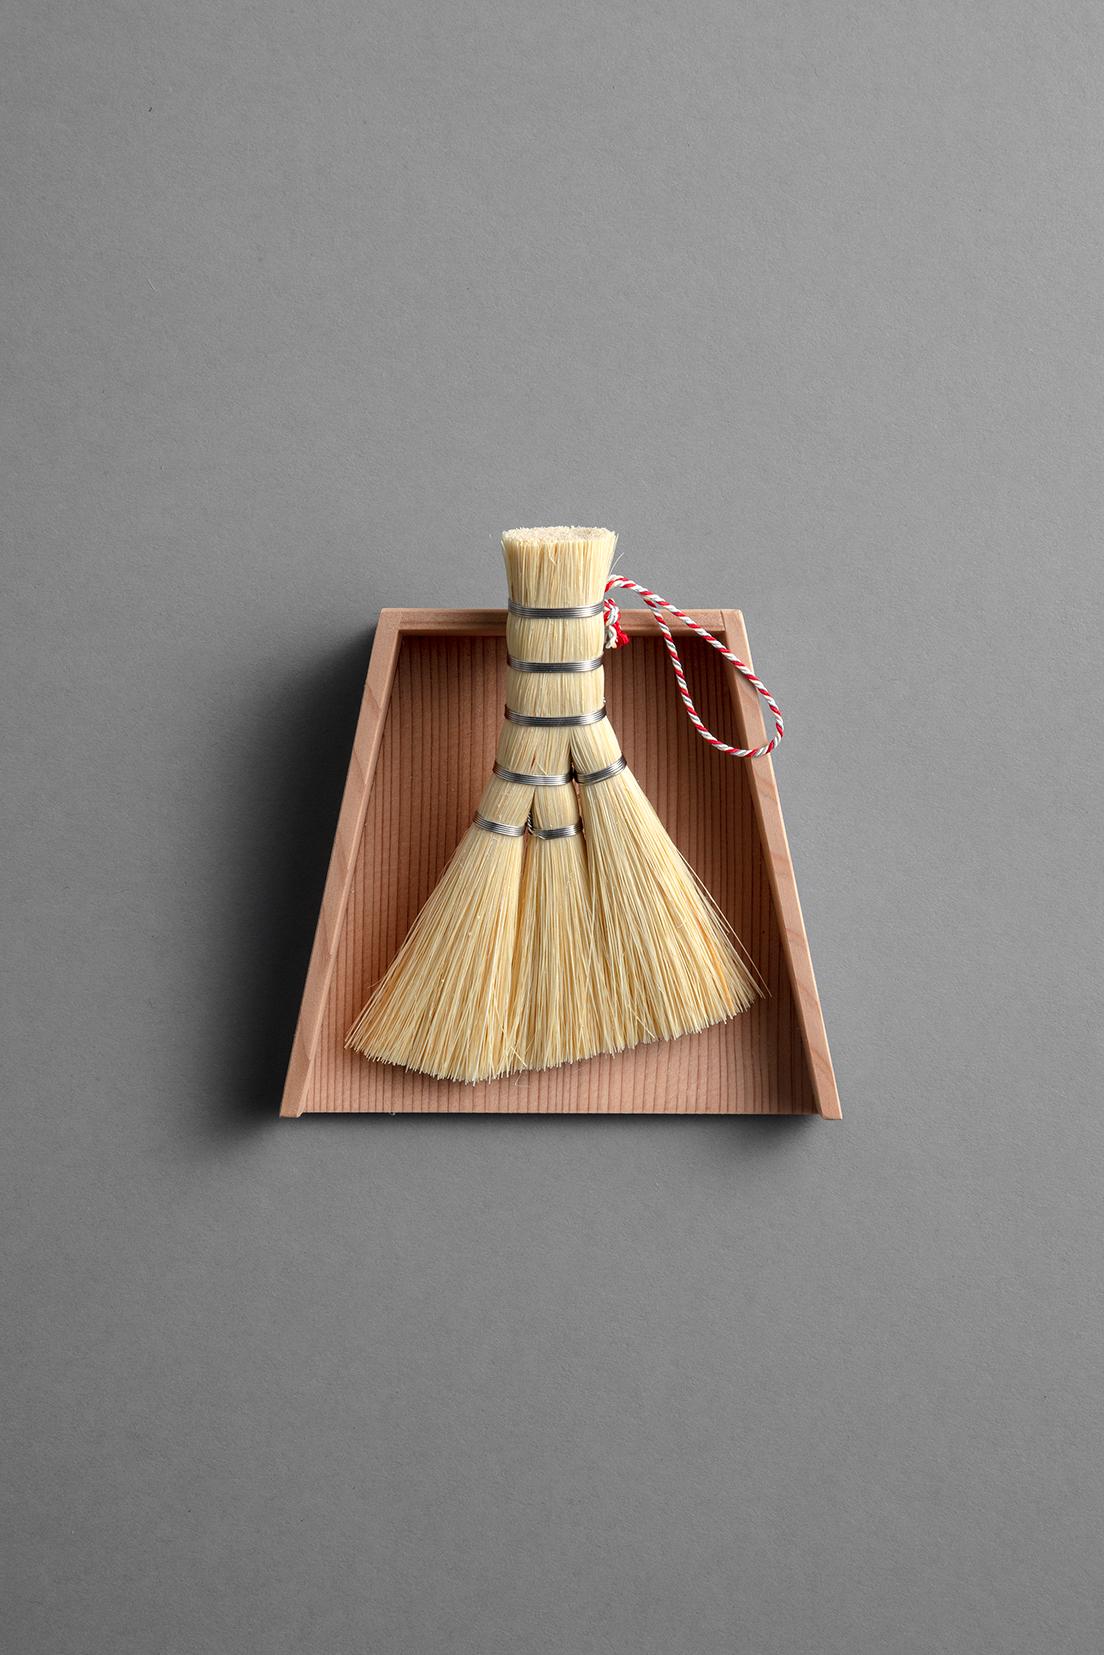 扫帚由和歌山的高田幸造商店制作，辫子由京都的Shoen Kumihimo制作。 宽 9 x 长 12.5 厘米。 簸箕由东京的〈井上木工〉制作。 宽 12.7 x 深 11.4 x 高 3.3 厘米。 一套 13,200 日元（东青山 TEL 03 3400 5525）。